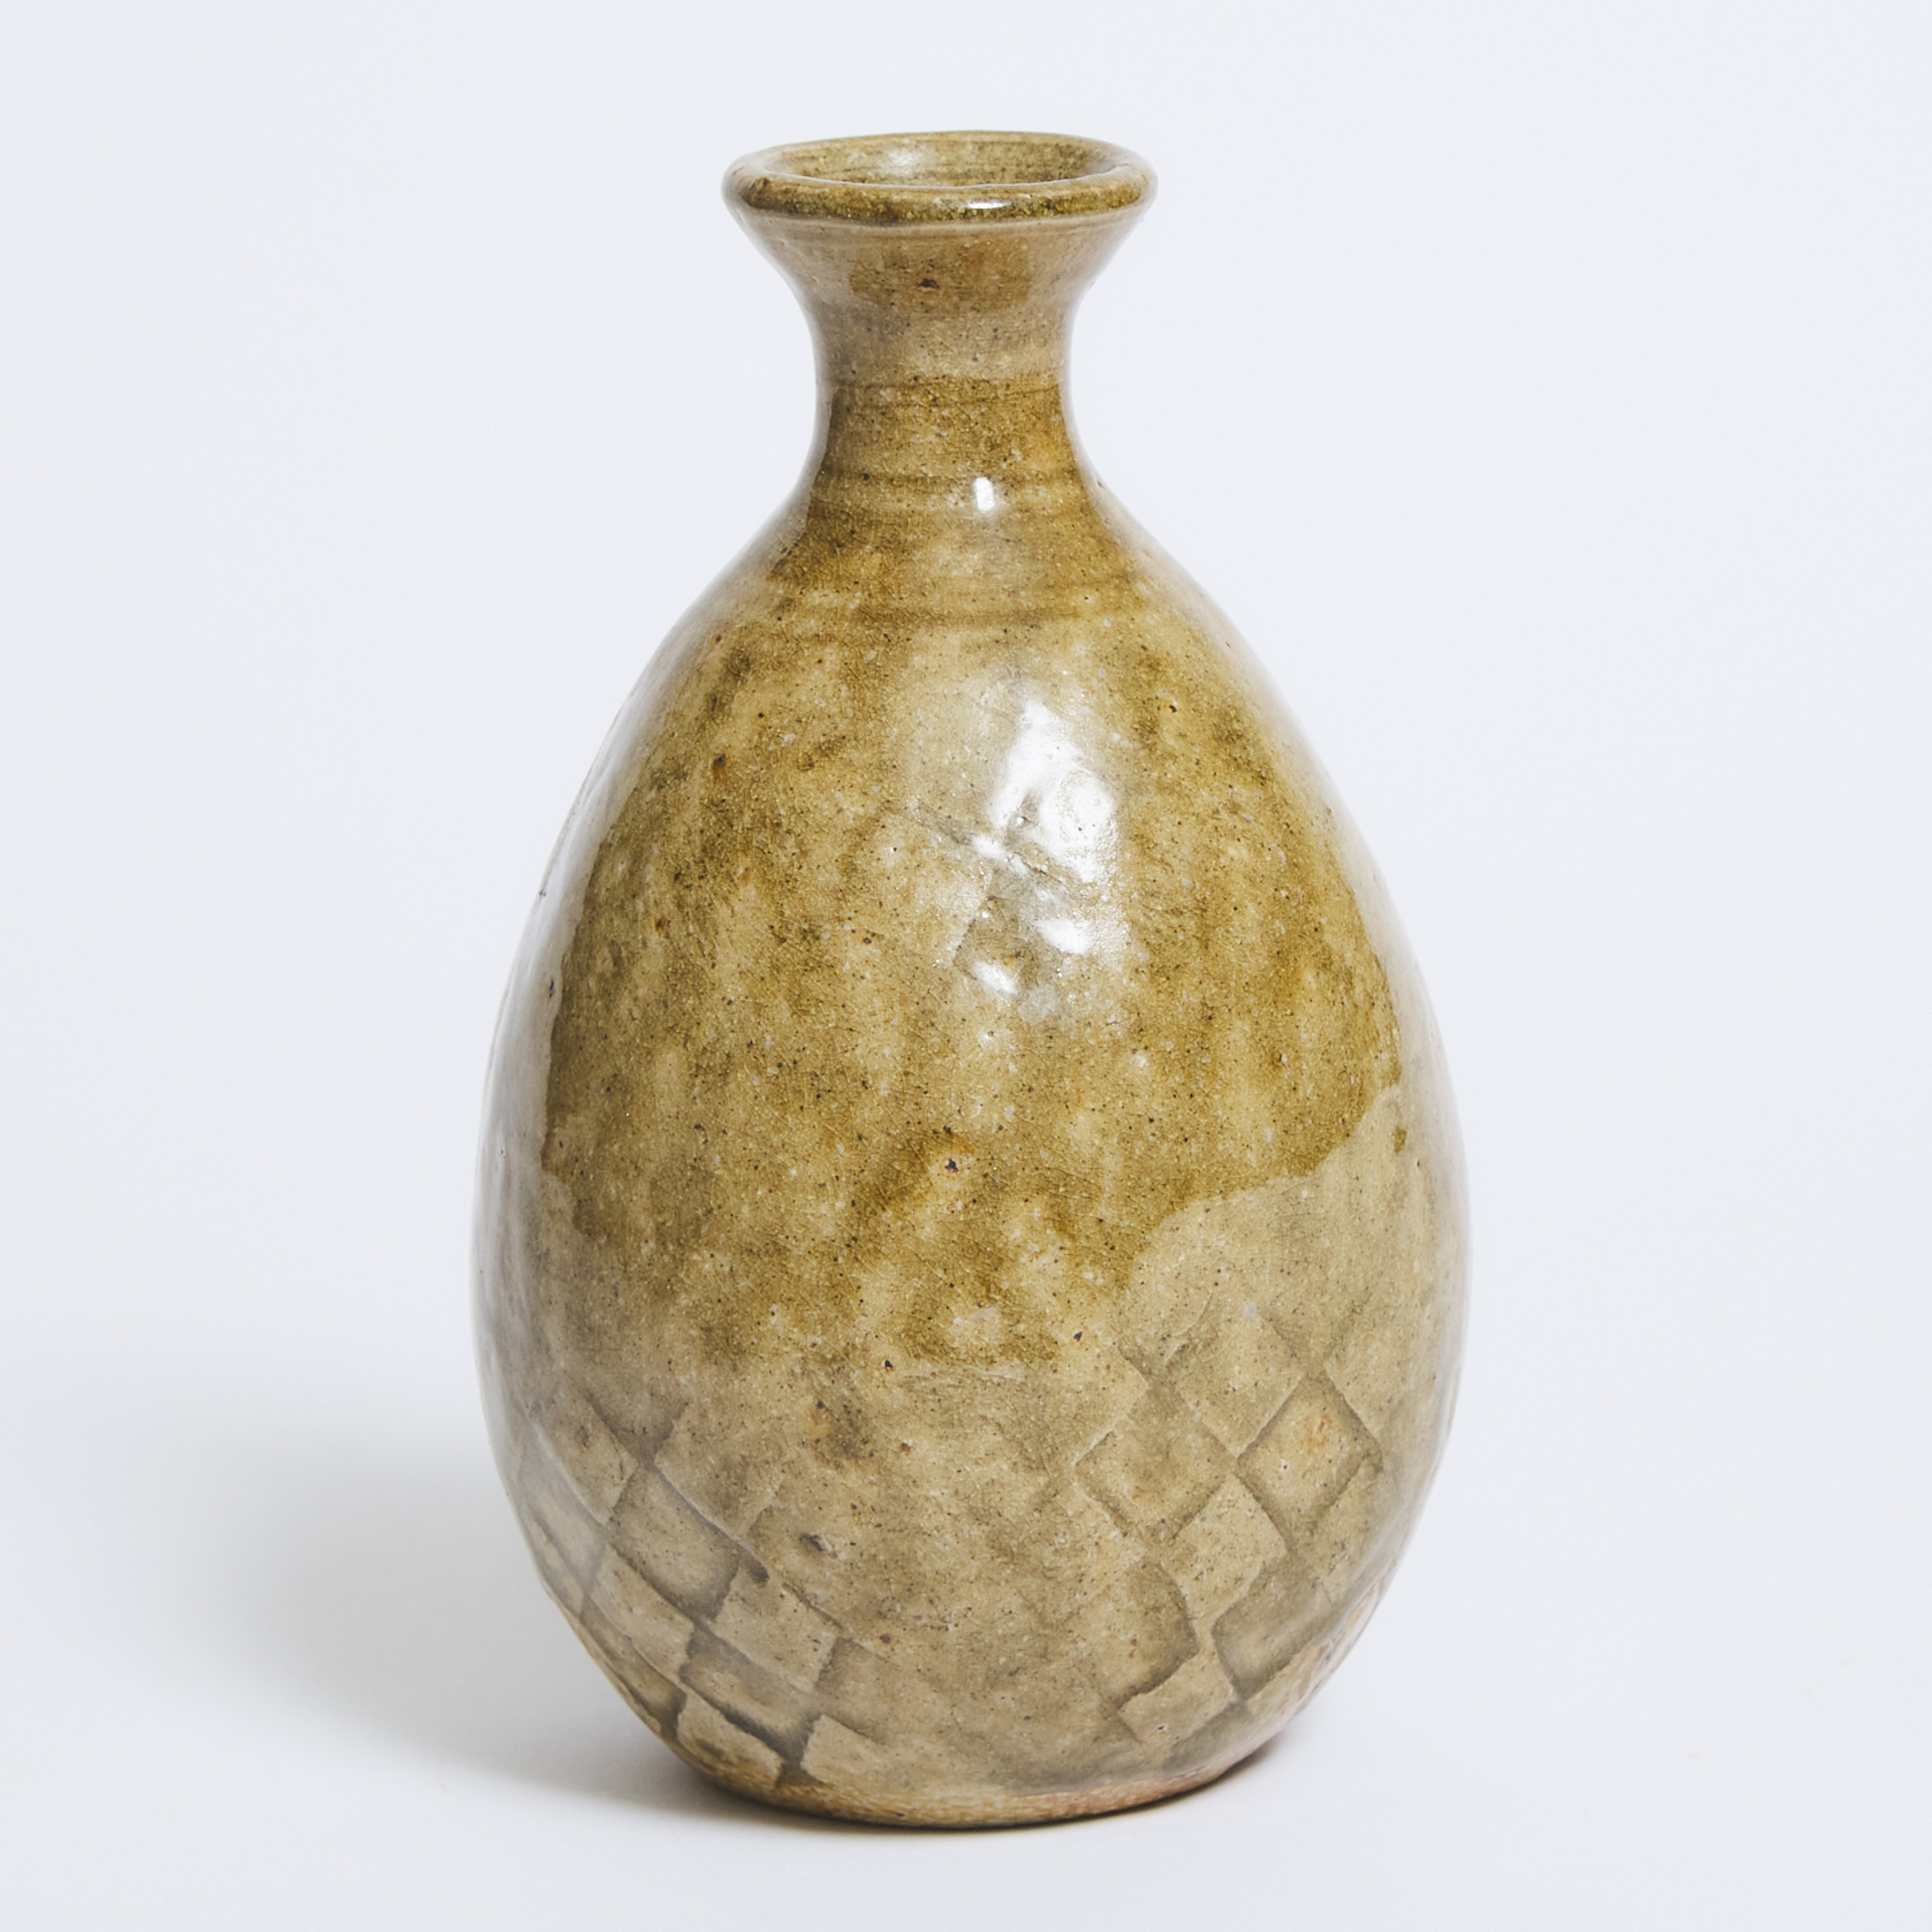 Robert Archambeau (Canadian, 1933-2022), Celadon Glazed Moulded Stoneware Vase, late 20th century